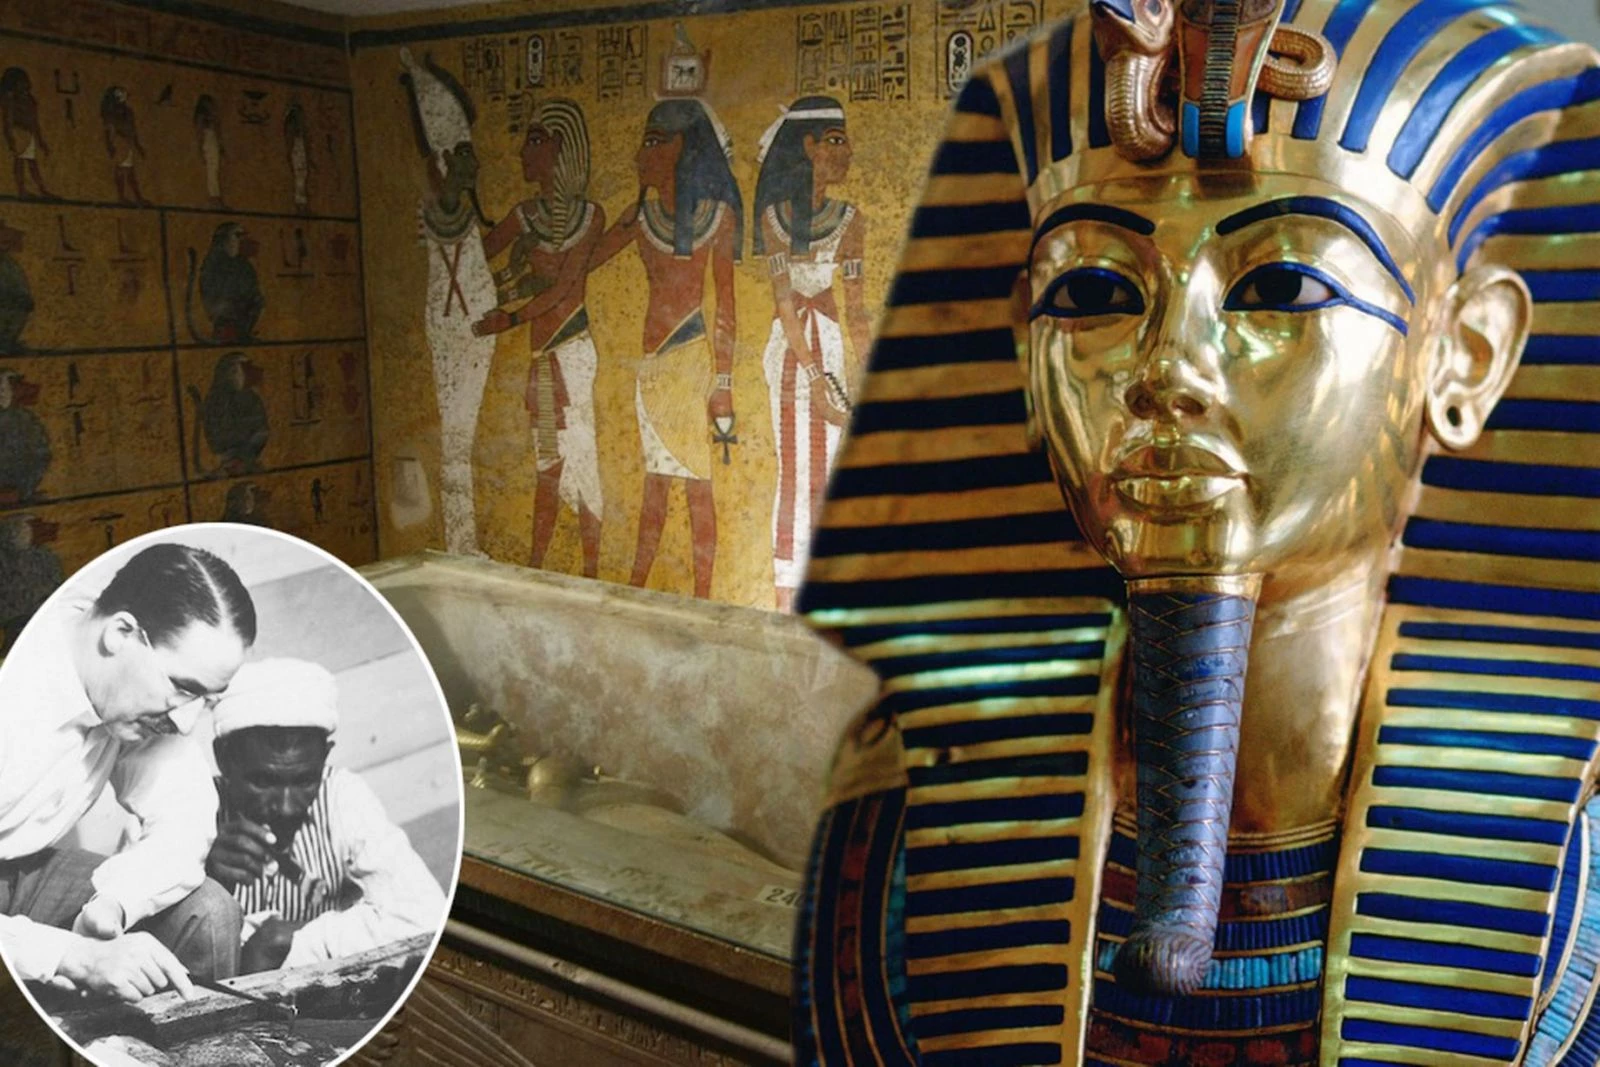 Lăng mộ Tutankhamun luôn là những điều kỳ bí